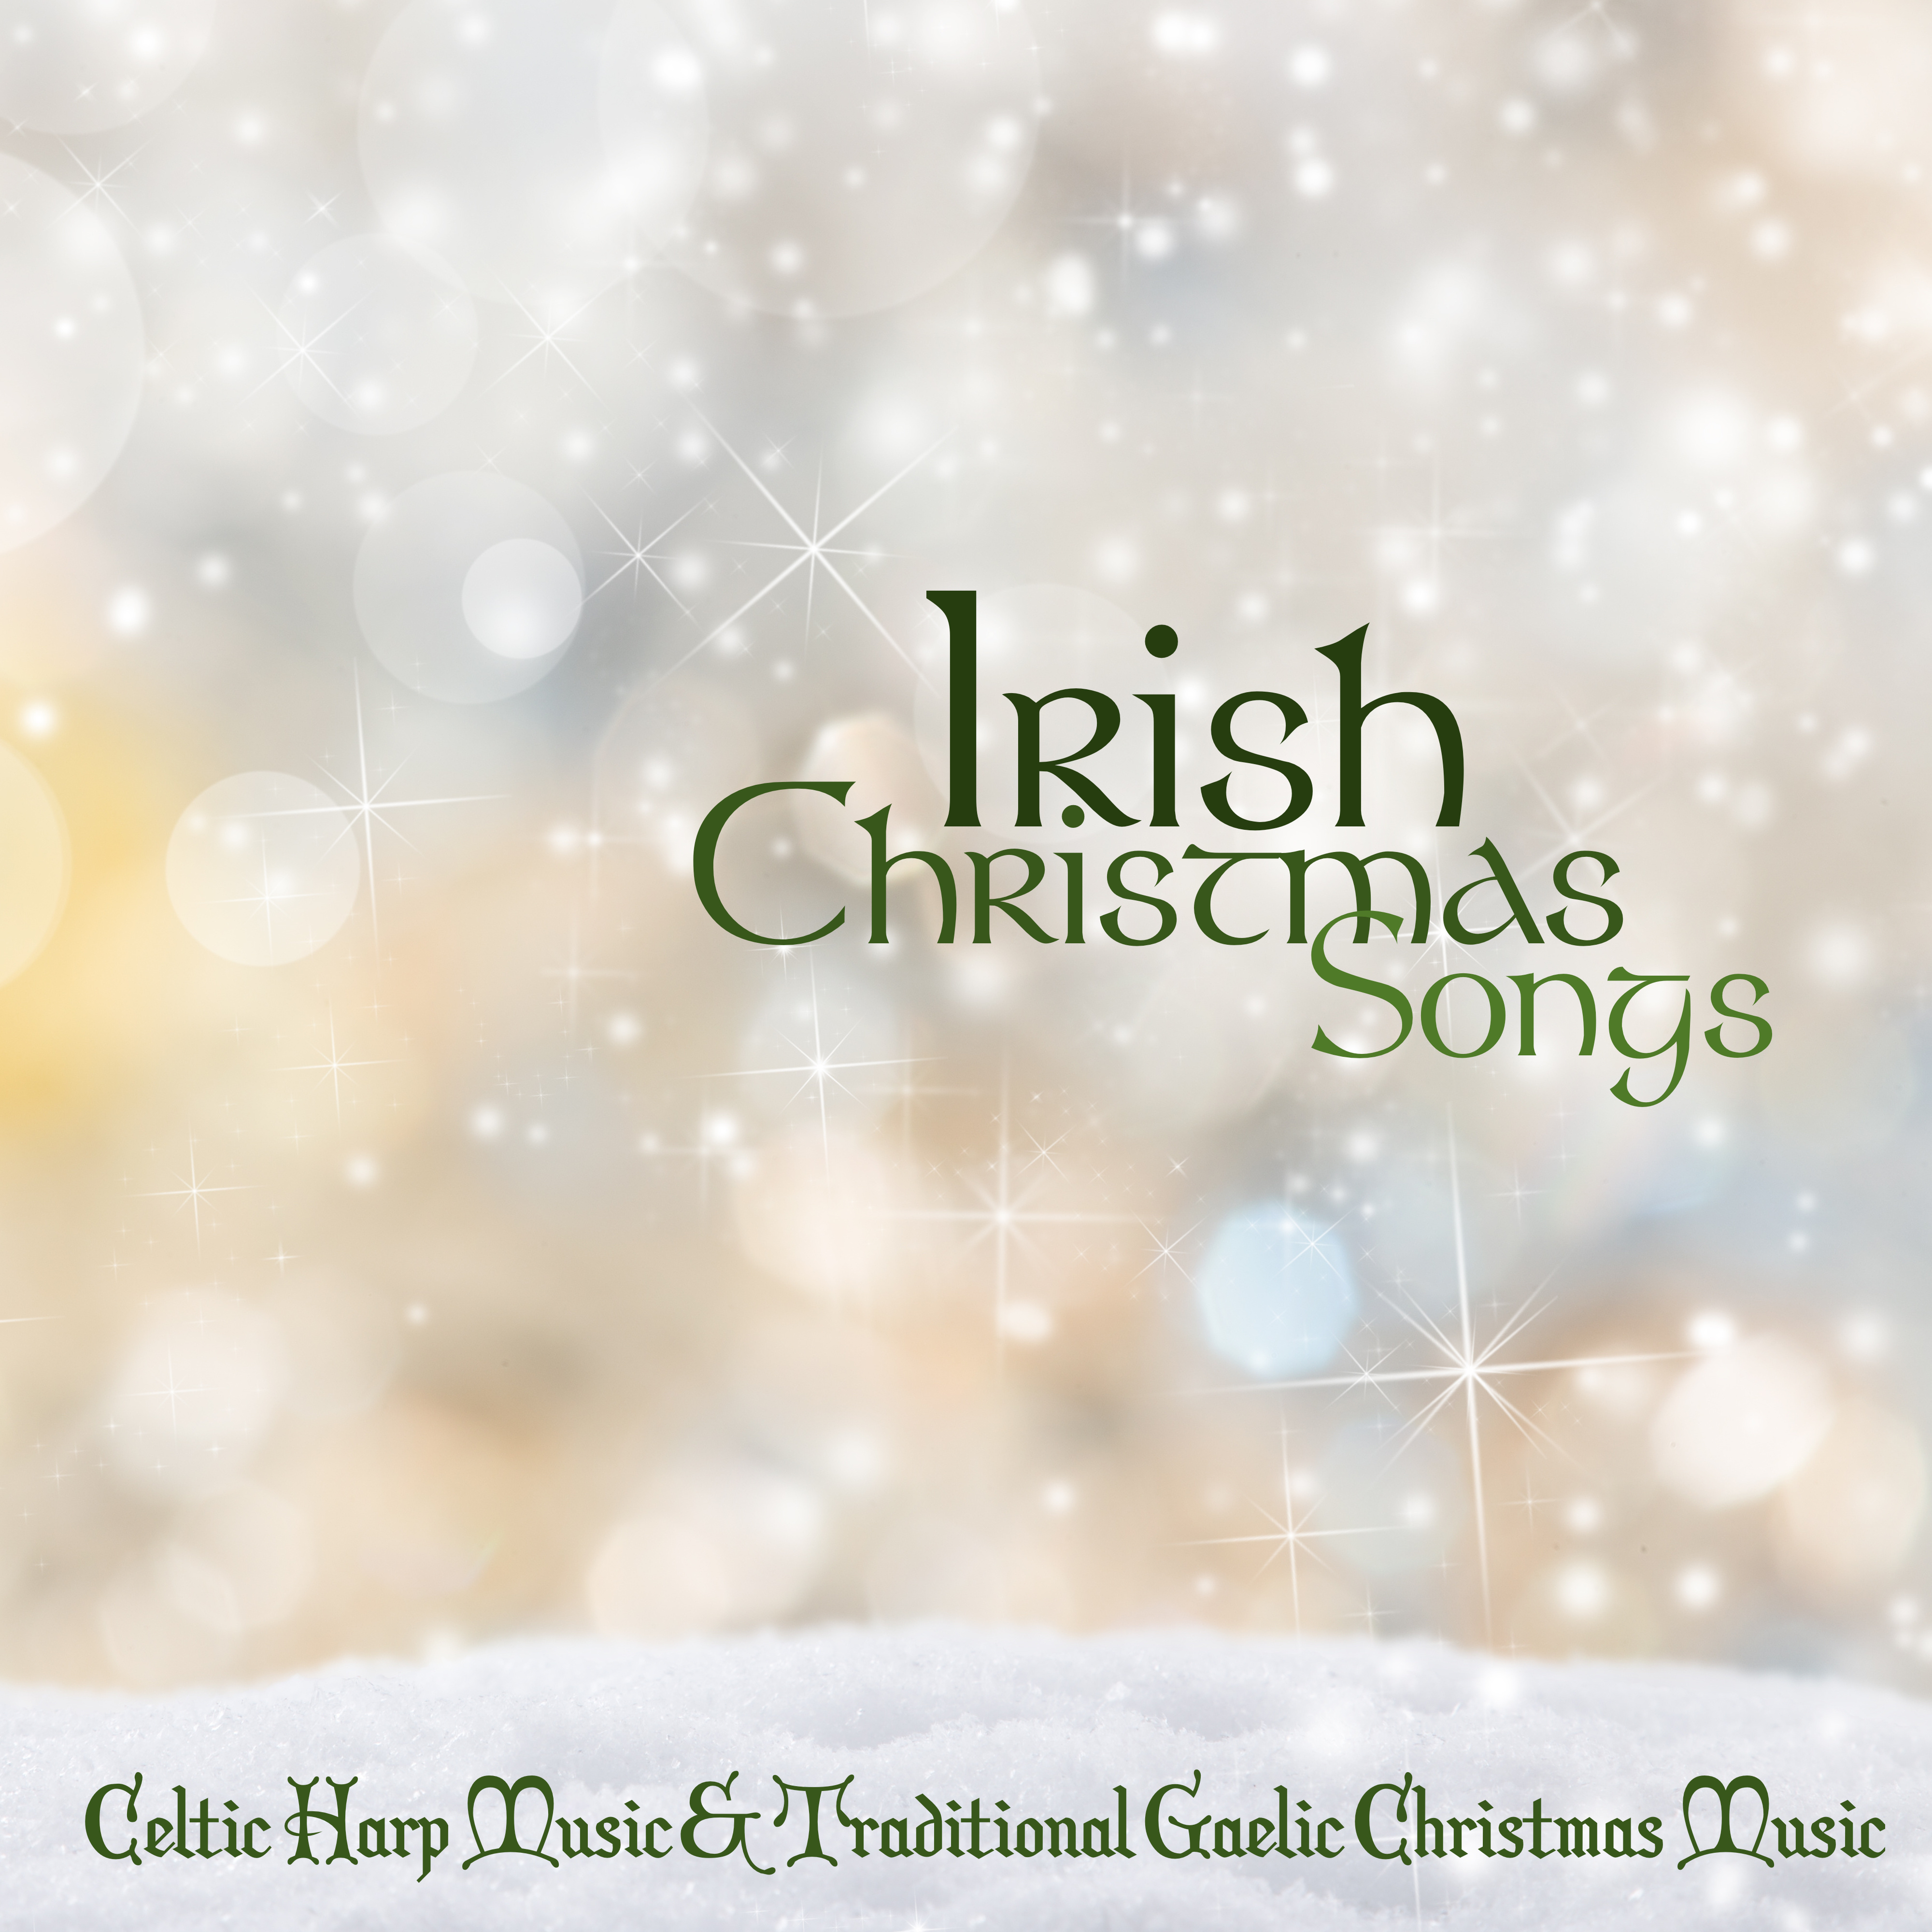 Christmas Carol - Irish Christmas